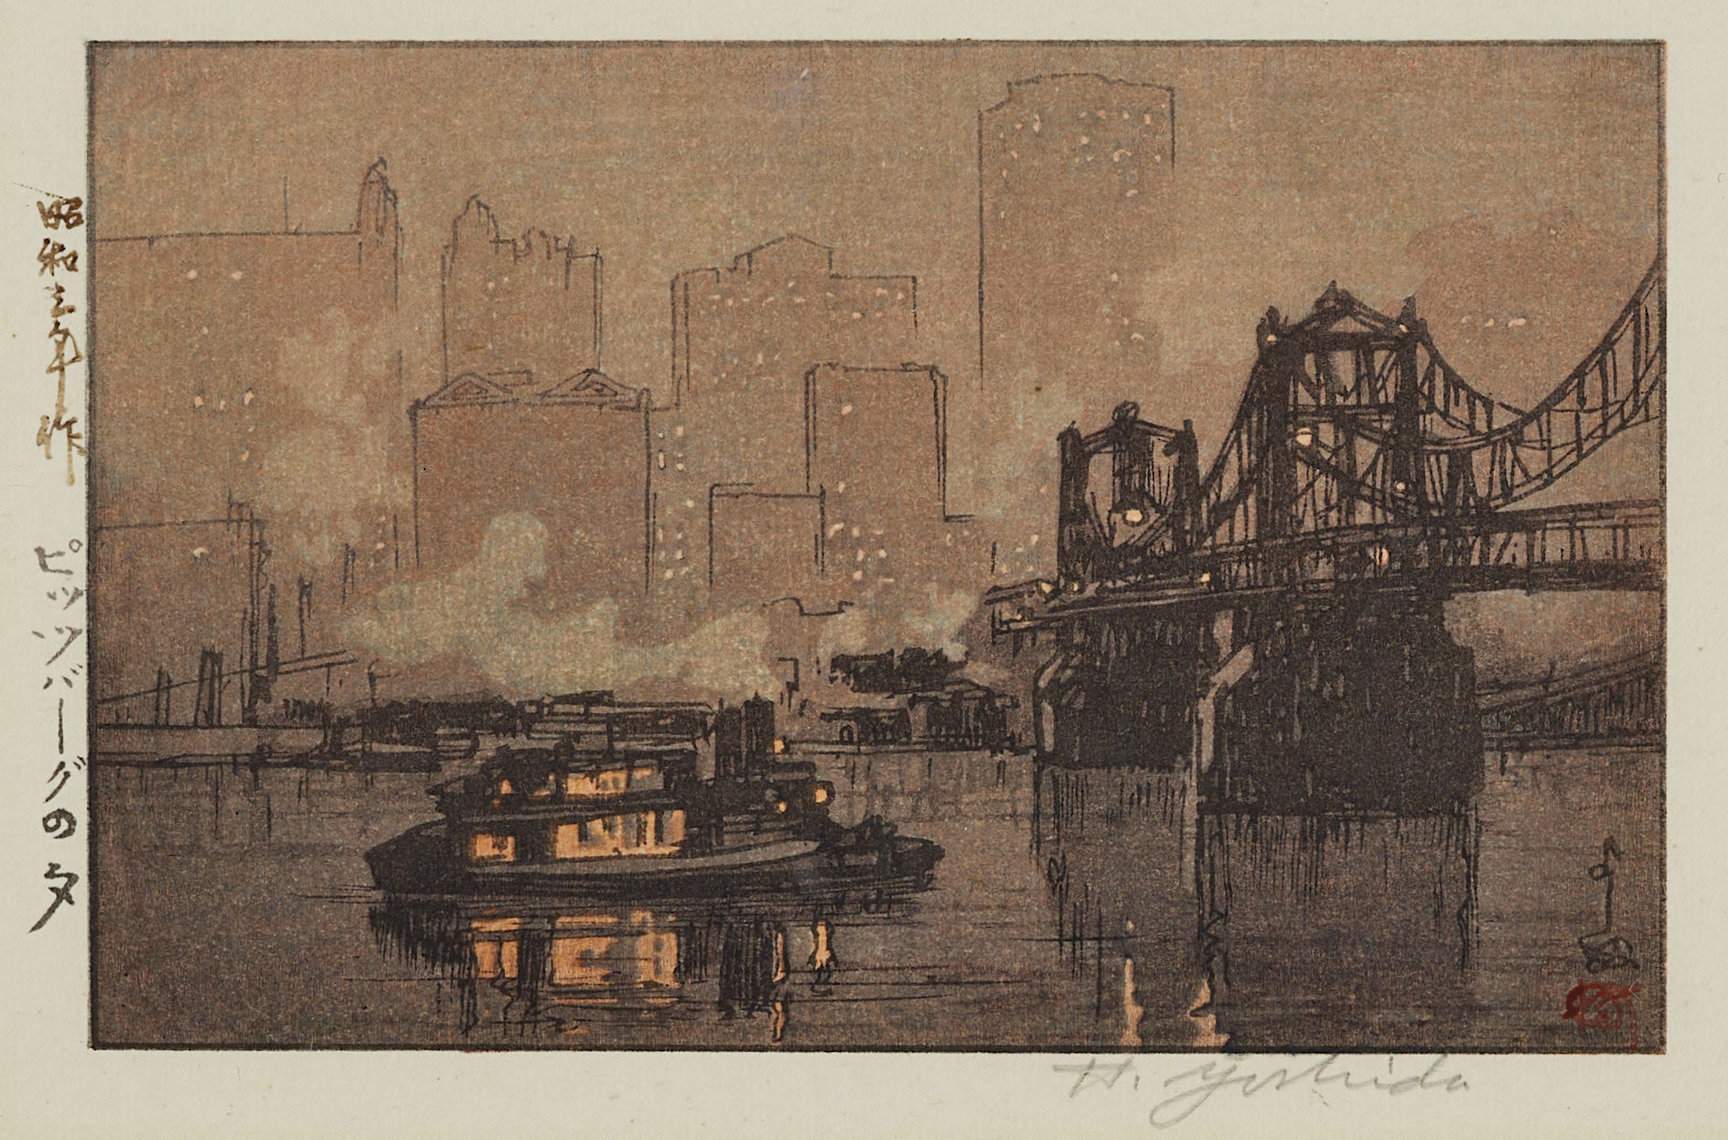 Hiroshi Yoshida “Pittsburgh” 1928 woodblock print